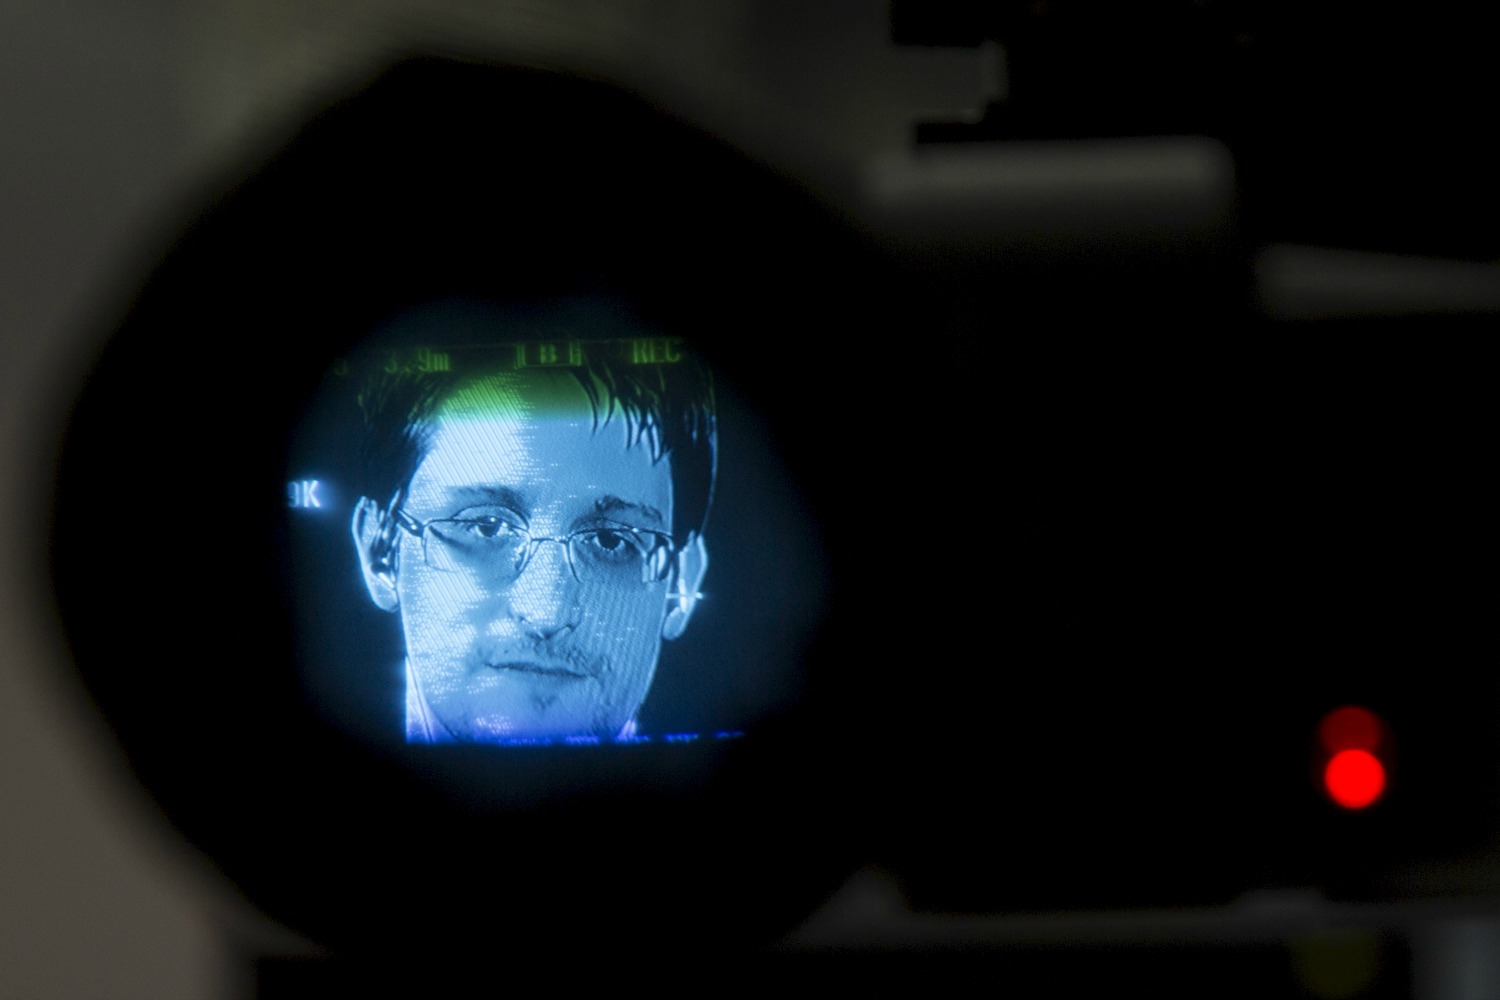 Snowden o el susurro de los dioses